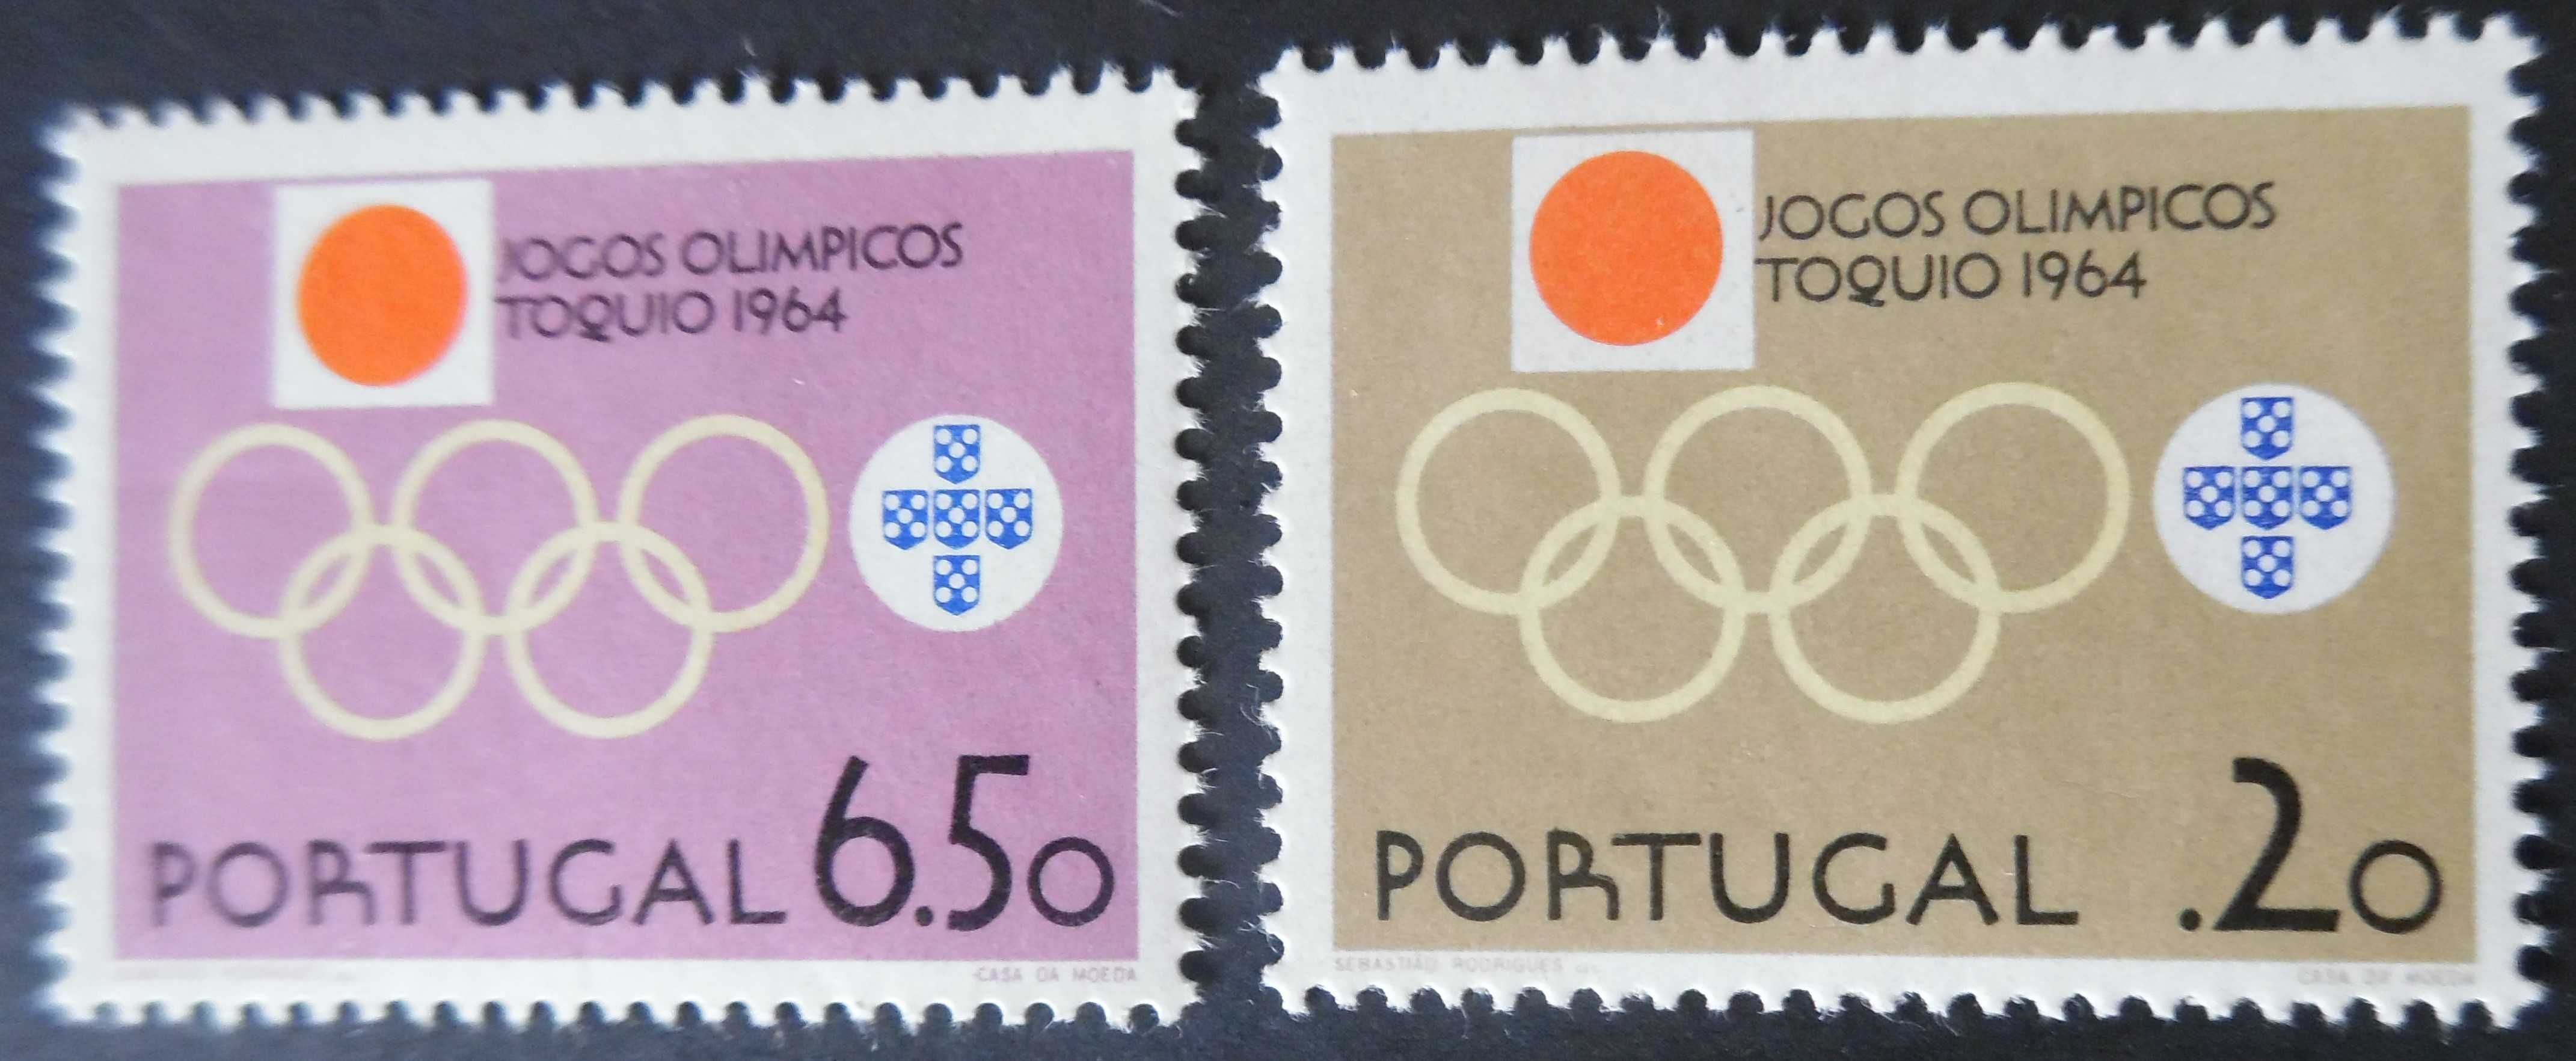 Selos Portugal 1964-Jogos Olímpicos Tóquio Novos s/ Charneira